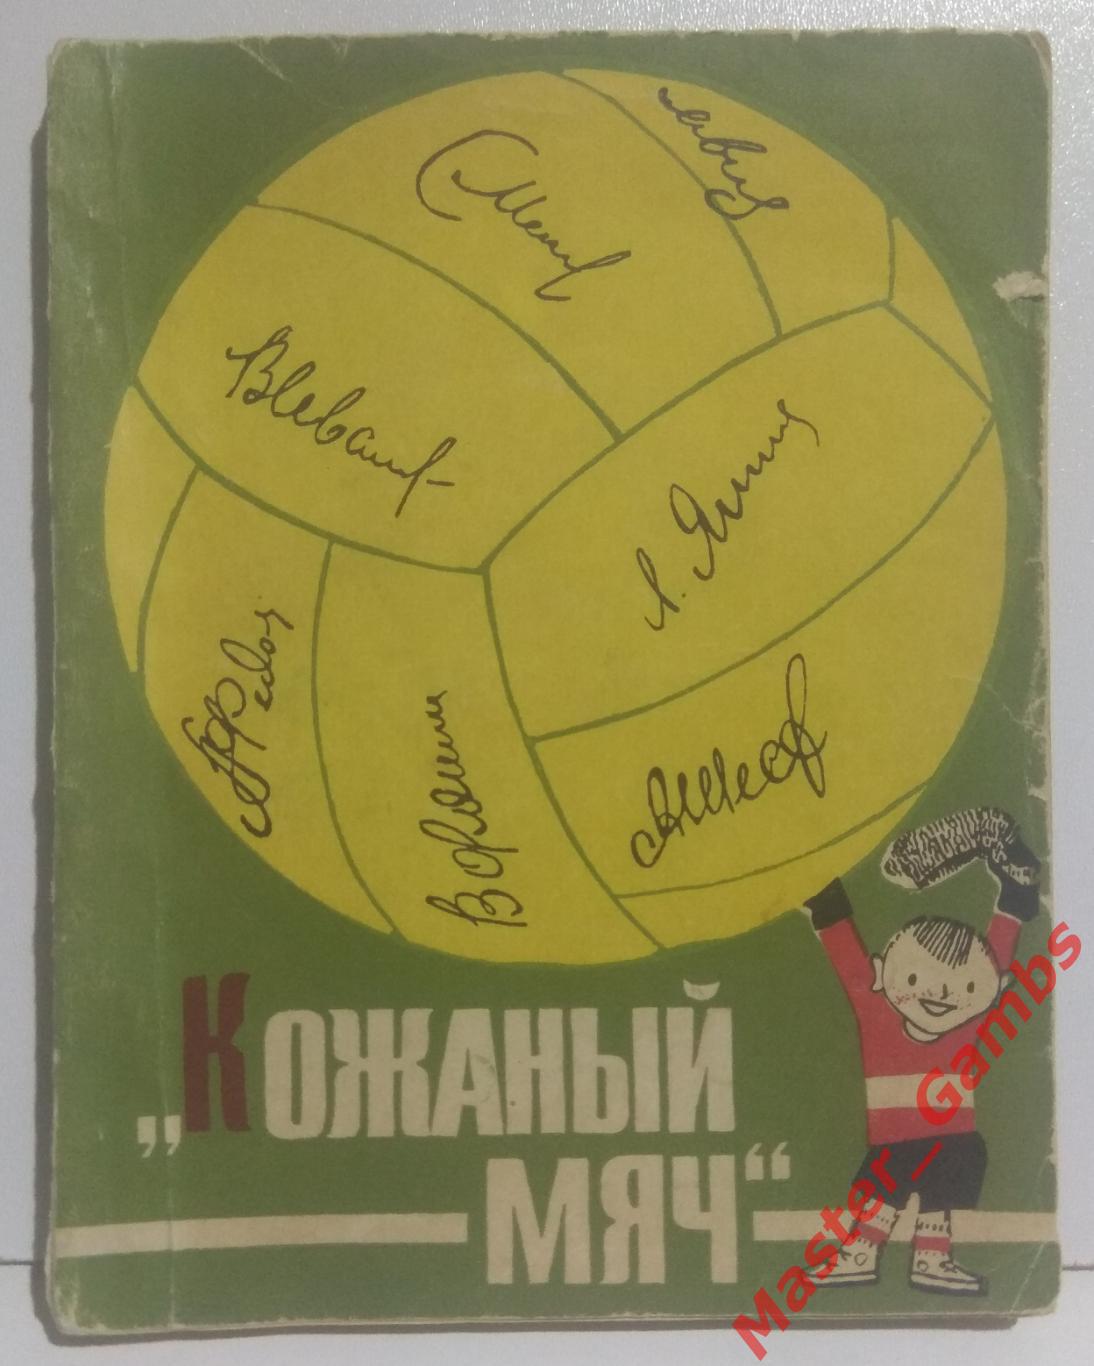 Поляков - Кожаный мяч москва молодая гвардия 1966*